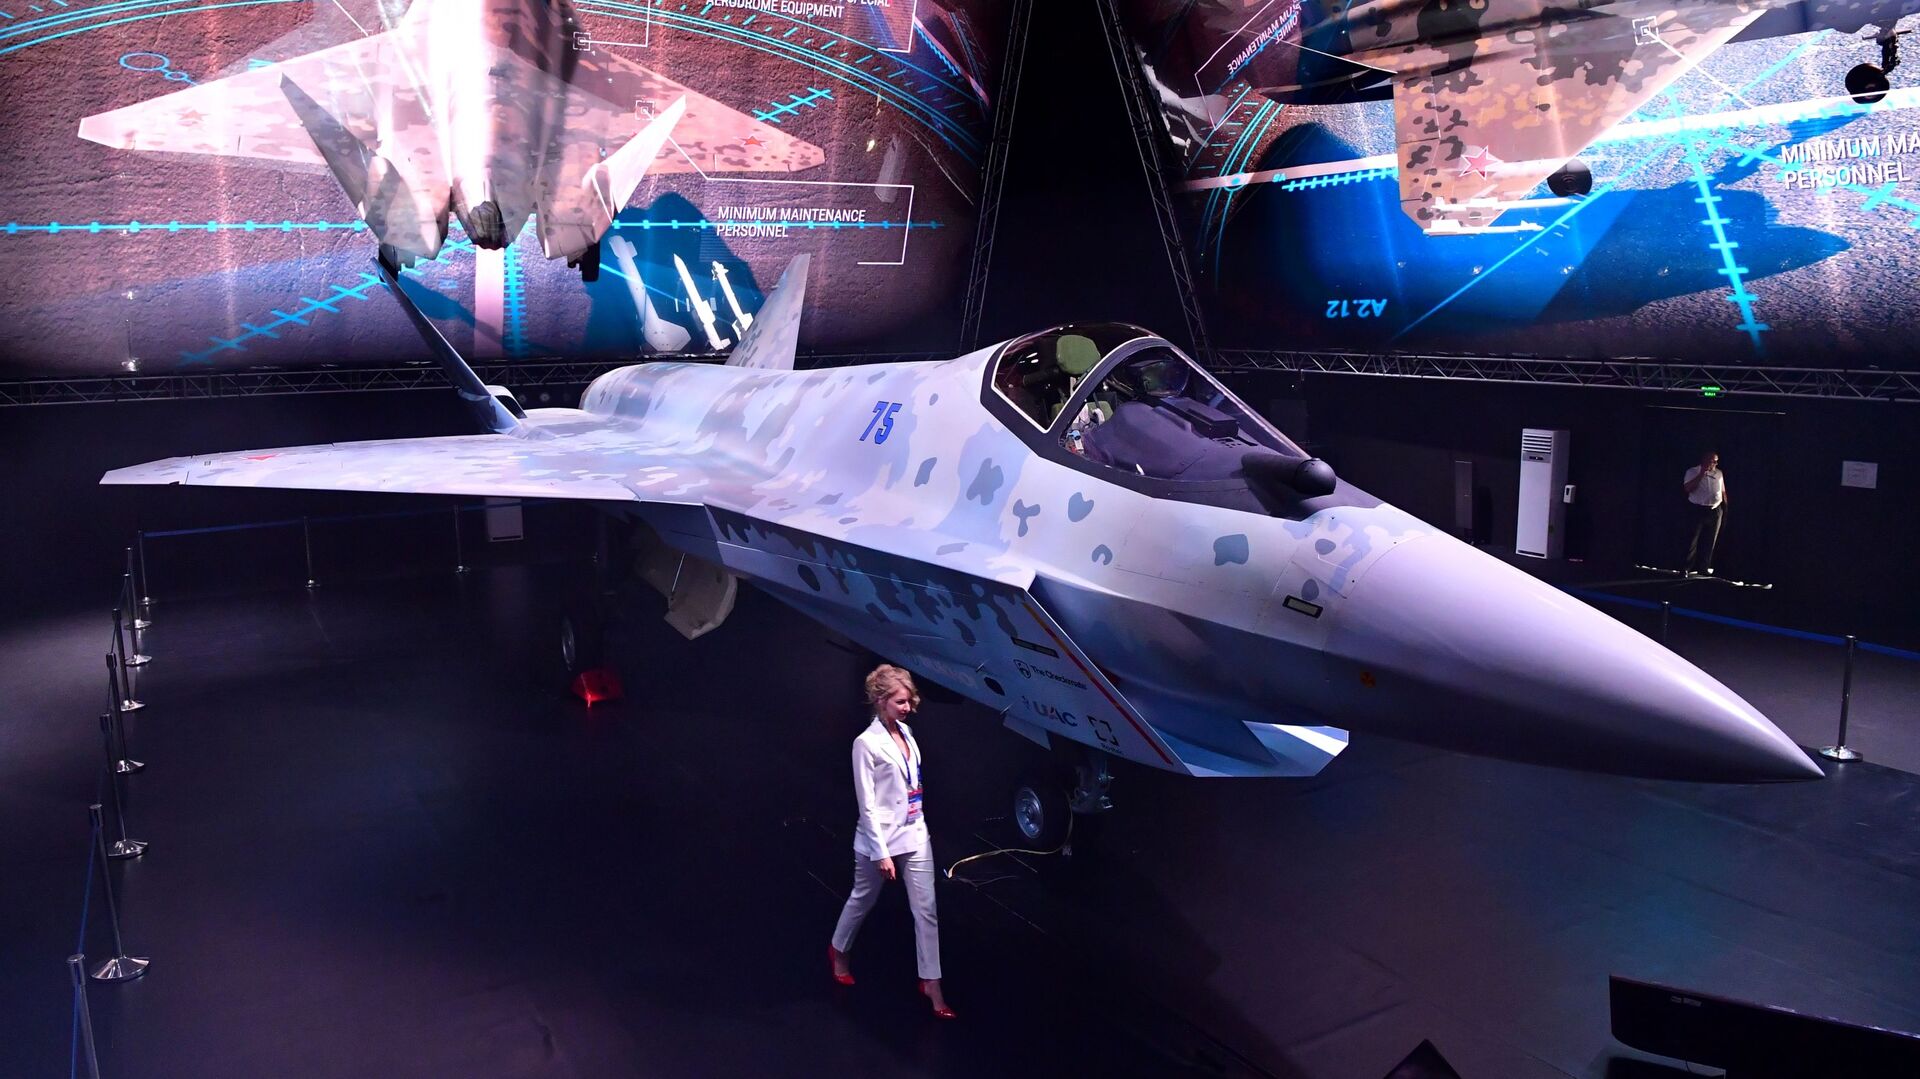 مقاتلة سوخوي تشيك ميت (كش ملك) في معرض الطيران والفضاء الدولي ماكس 2021 في جوكوفسكي، ضواحي موسكو، روسيا 20 يوليو 2021 - سبوتنيك عربي, 1920, 29.11.2021